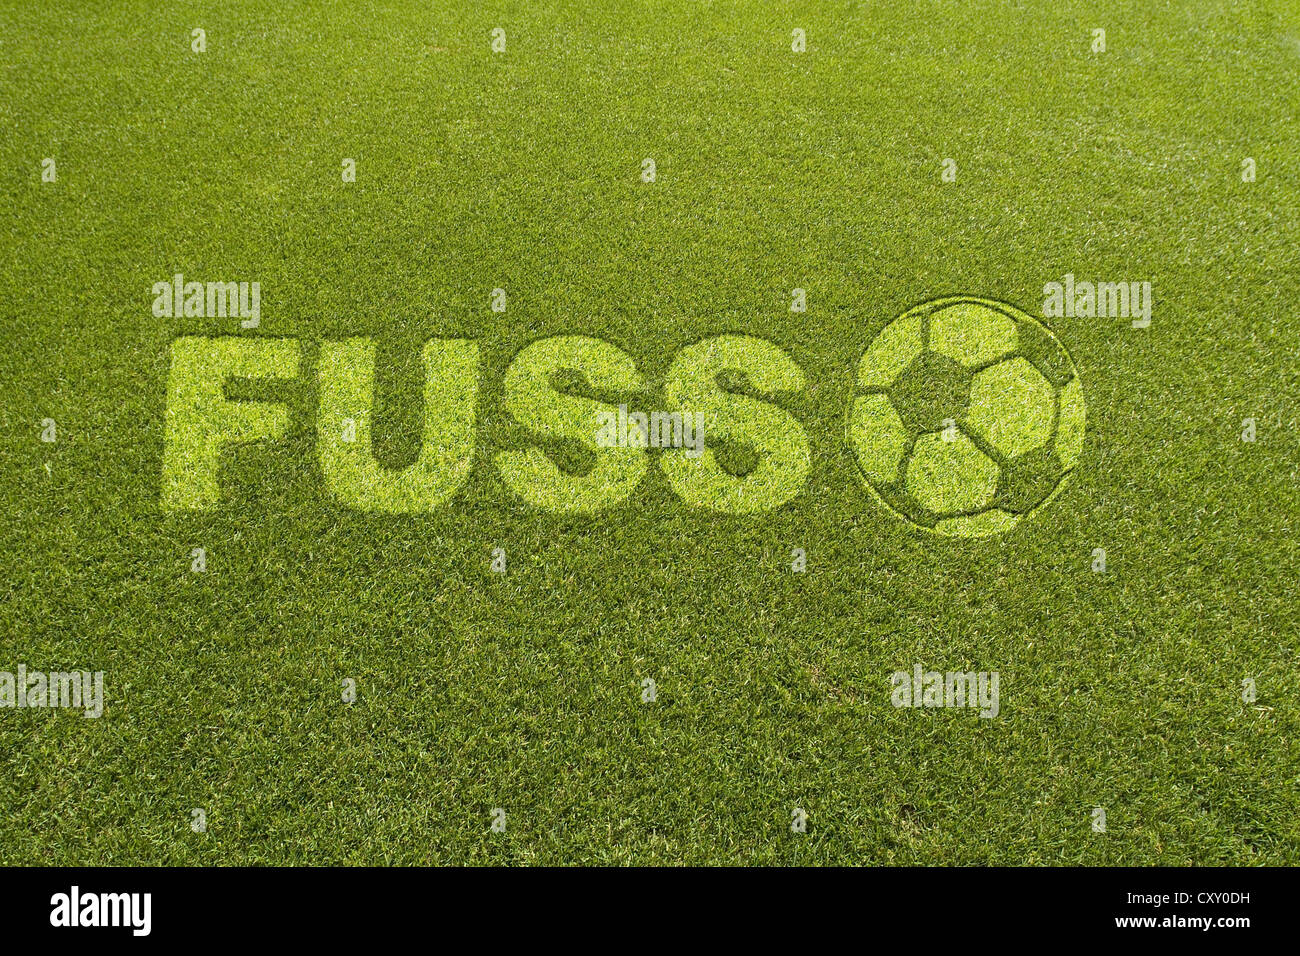 De l'herbe avec le lettrage FUSS, Allemand pour pied, à côté d'un modèle de football, la composition Banque D'Images